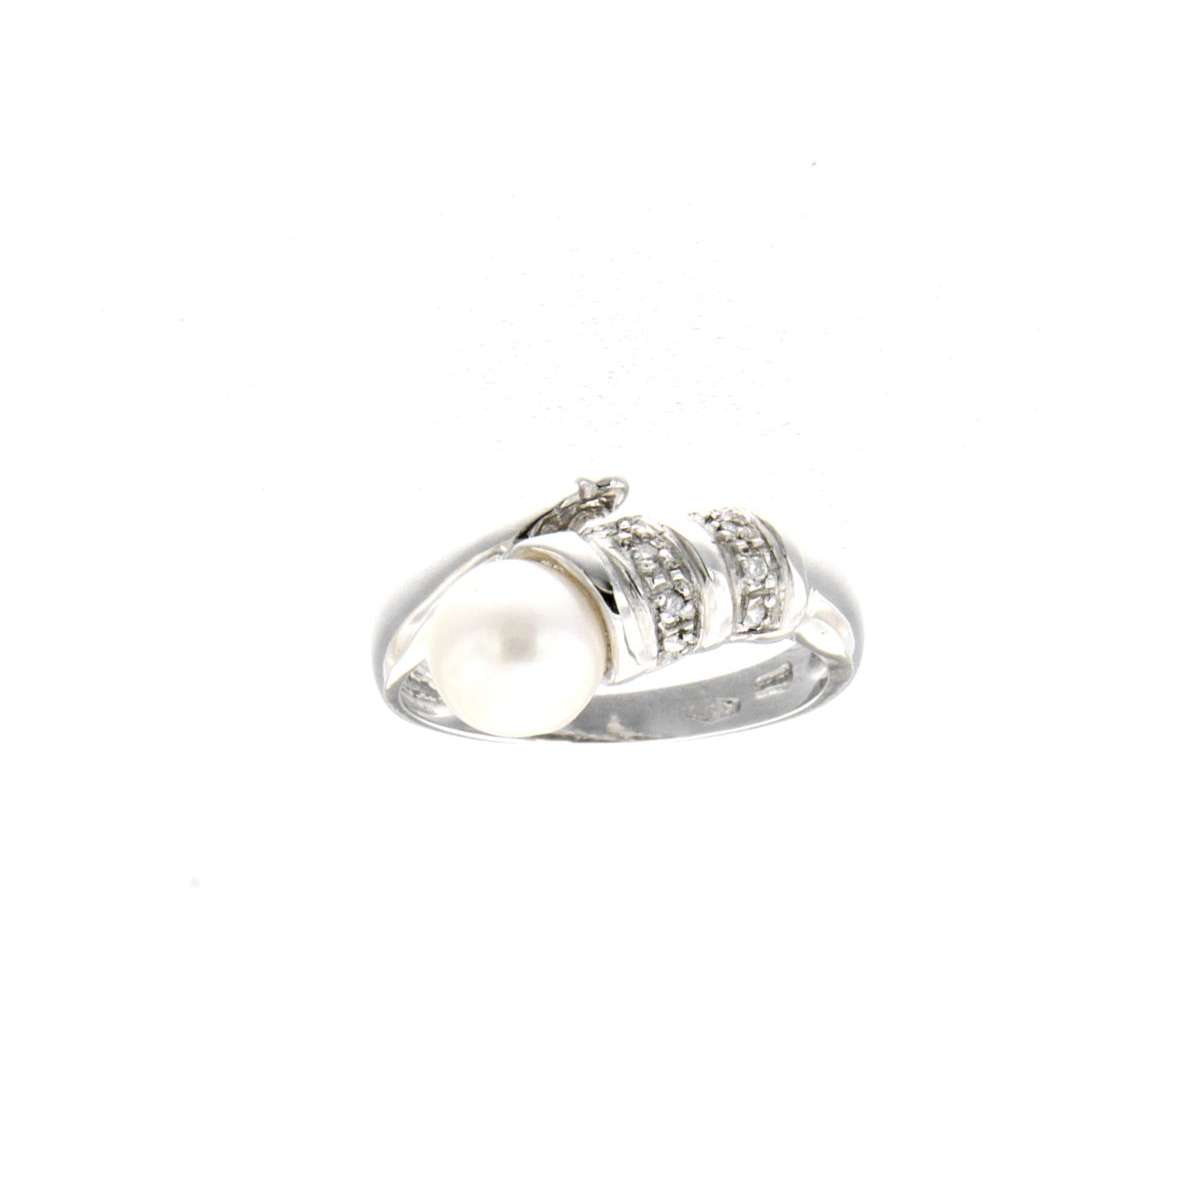 Anello perla mm 7 con diamanti carati 0,04 Colore G Purezza VS1